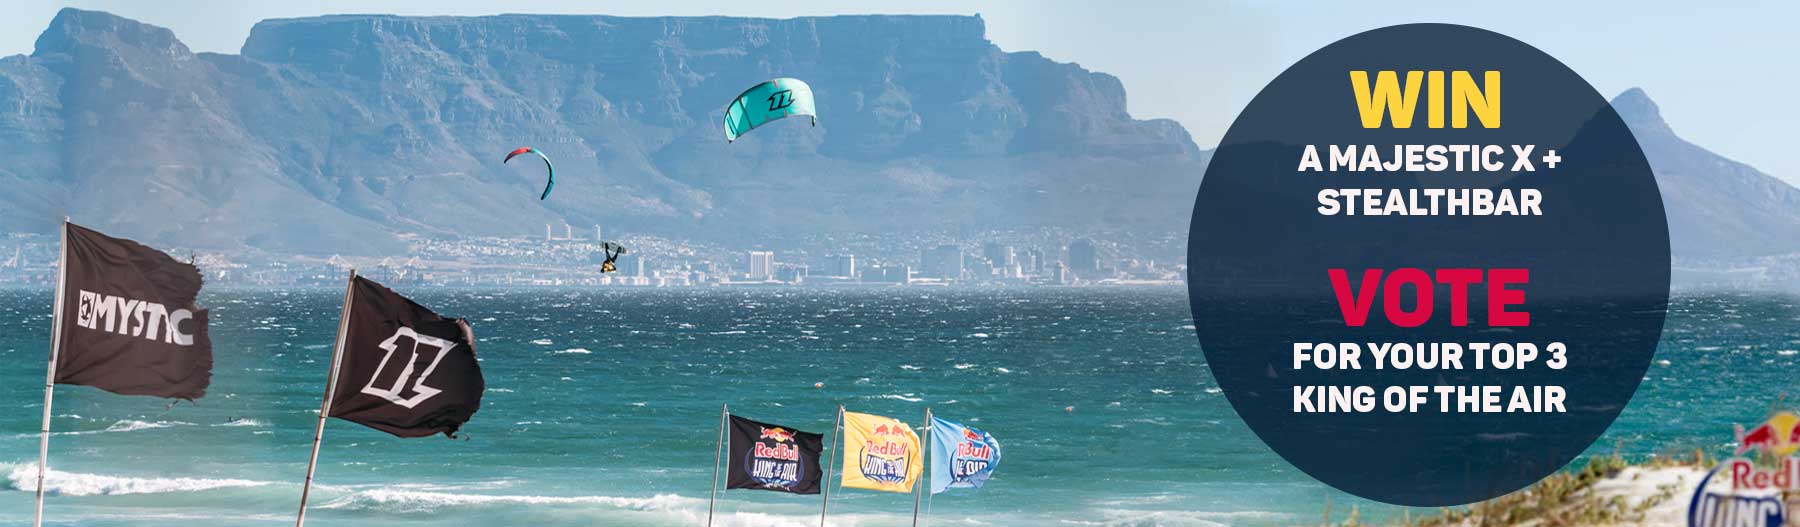 Kitemana Artikel De powervrouwen in kitesurfen en de King of the Air 2020 afbeelding afbeelding